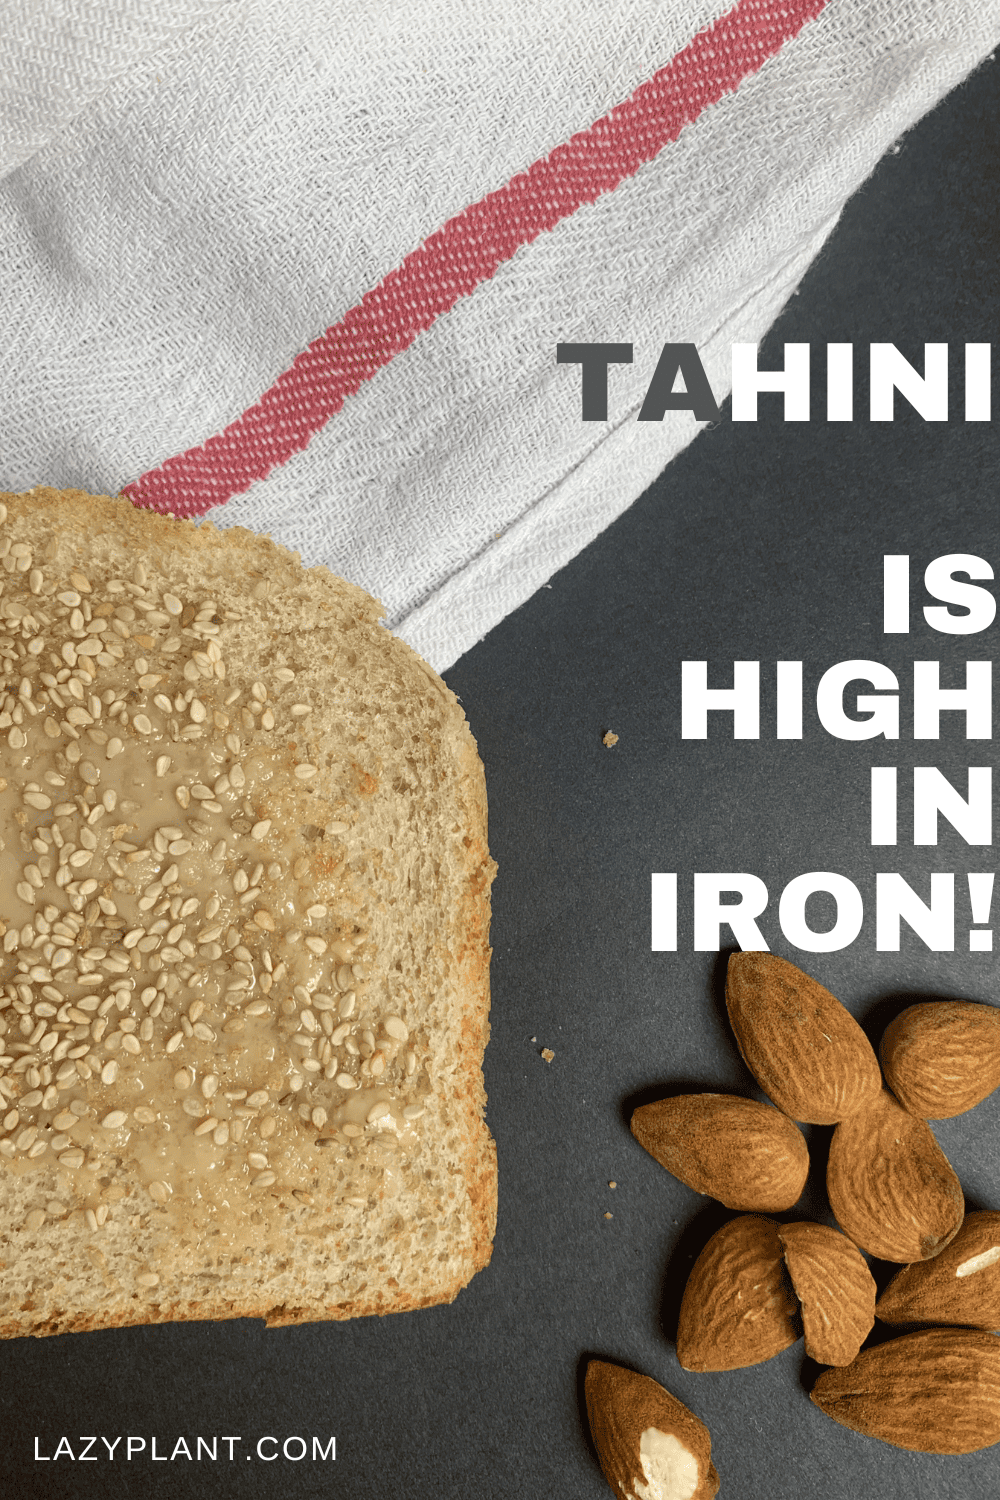 Tahini is a great vegan source of iron!